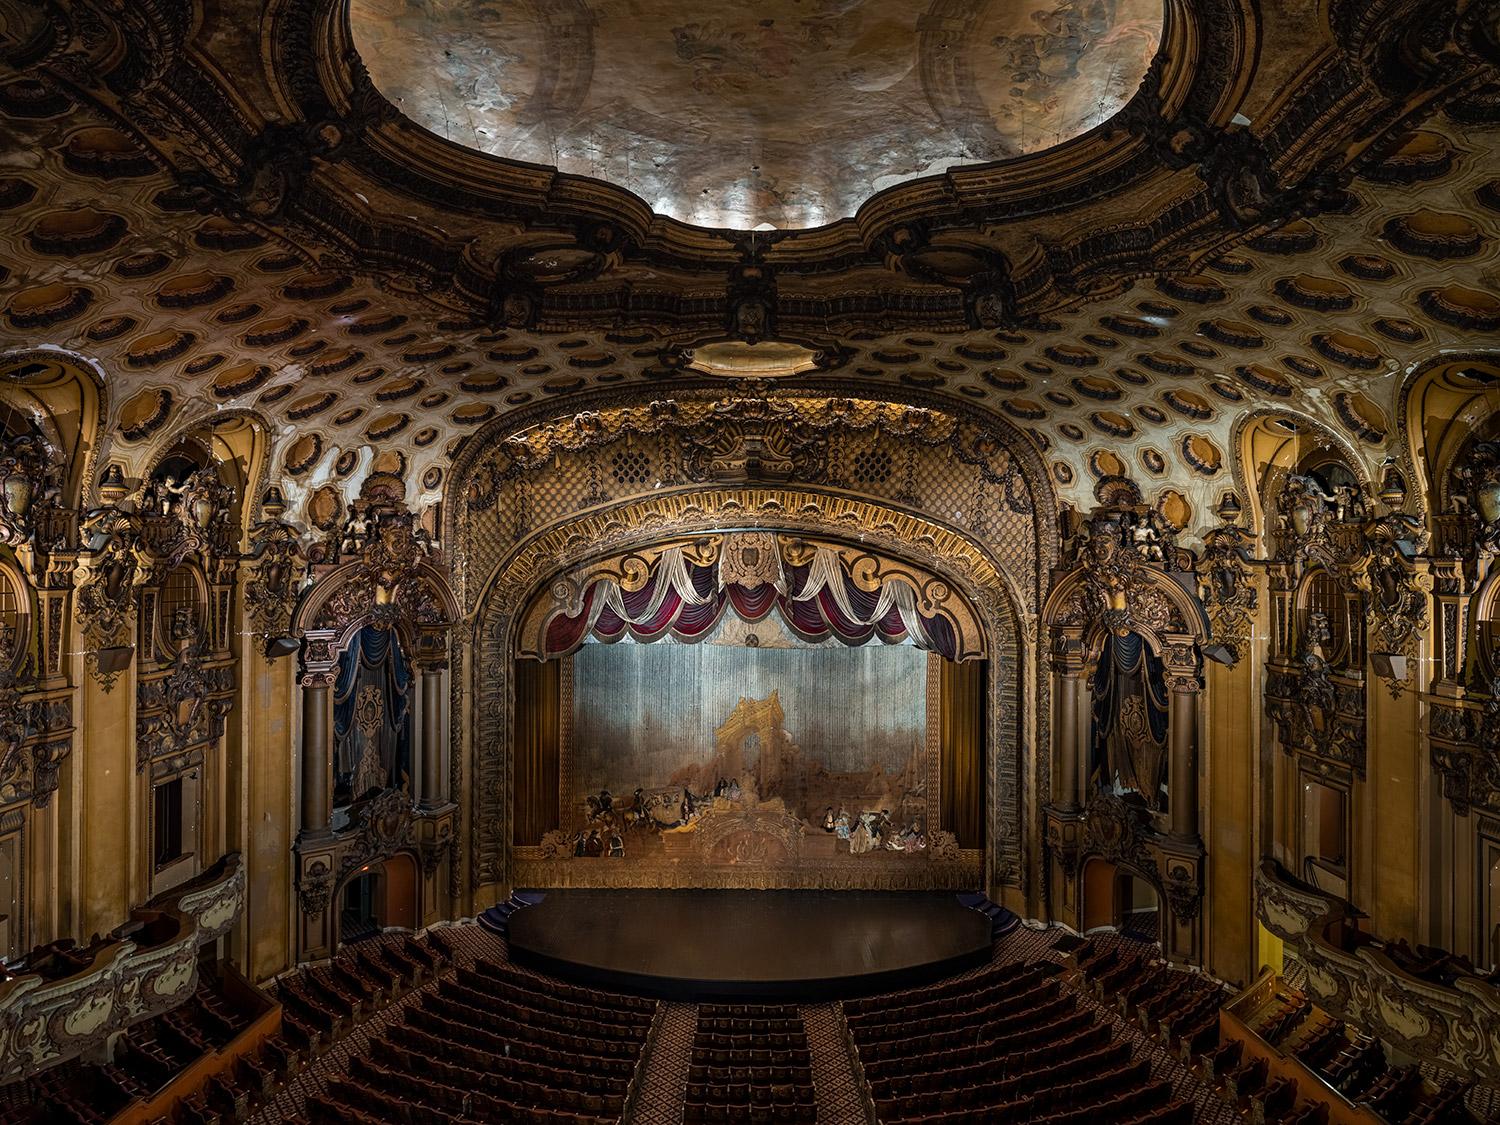 "Das beeindruckende Paramount Theatre in Oakland, Kalifornien, ist einer der am besten erhaltenen und letzten Art-Déco-Kinopaläste des Landes. Das Paramount wurde in den frühen 1930er Jahren vor der großen Depression erbaut und diente der Gemeinde